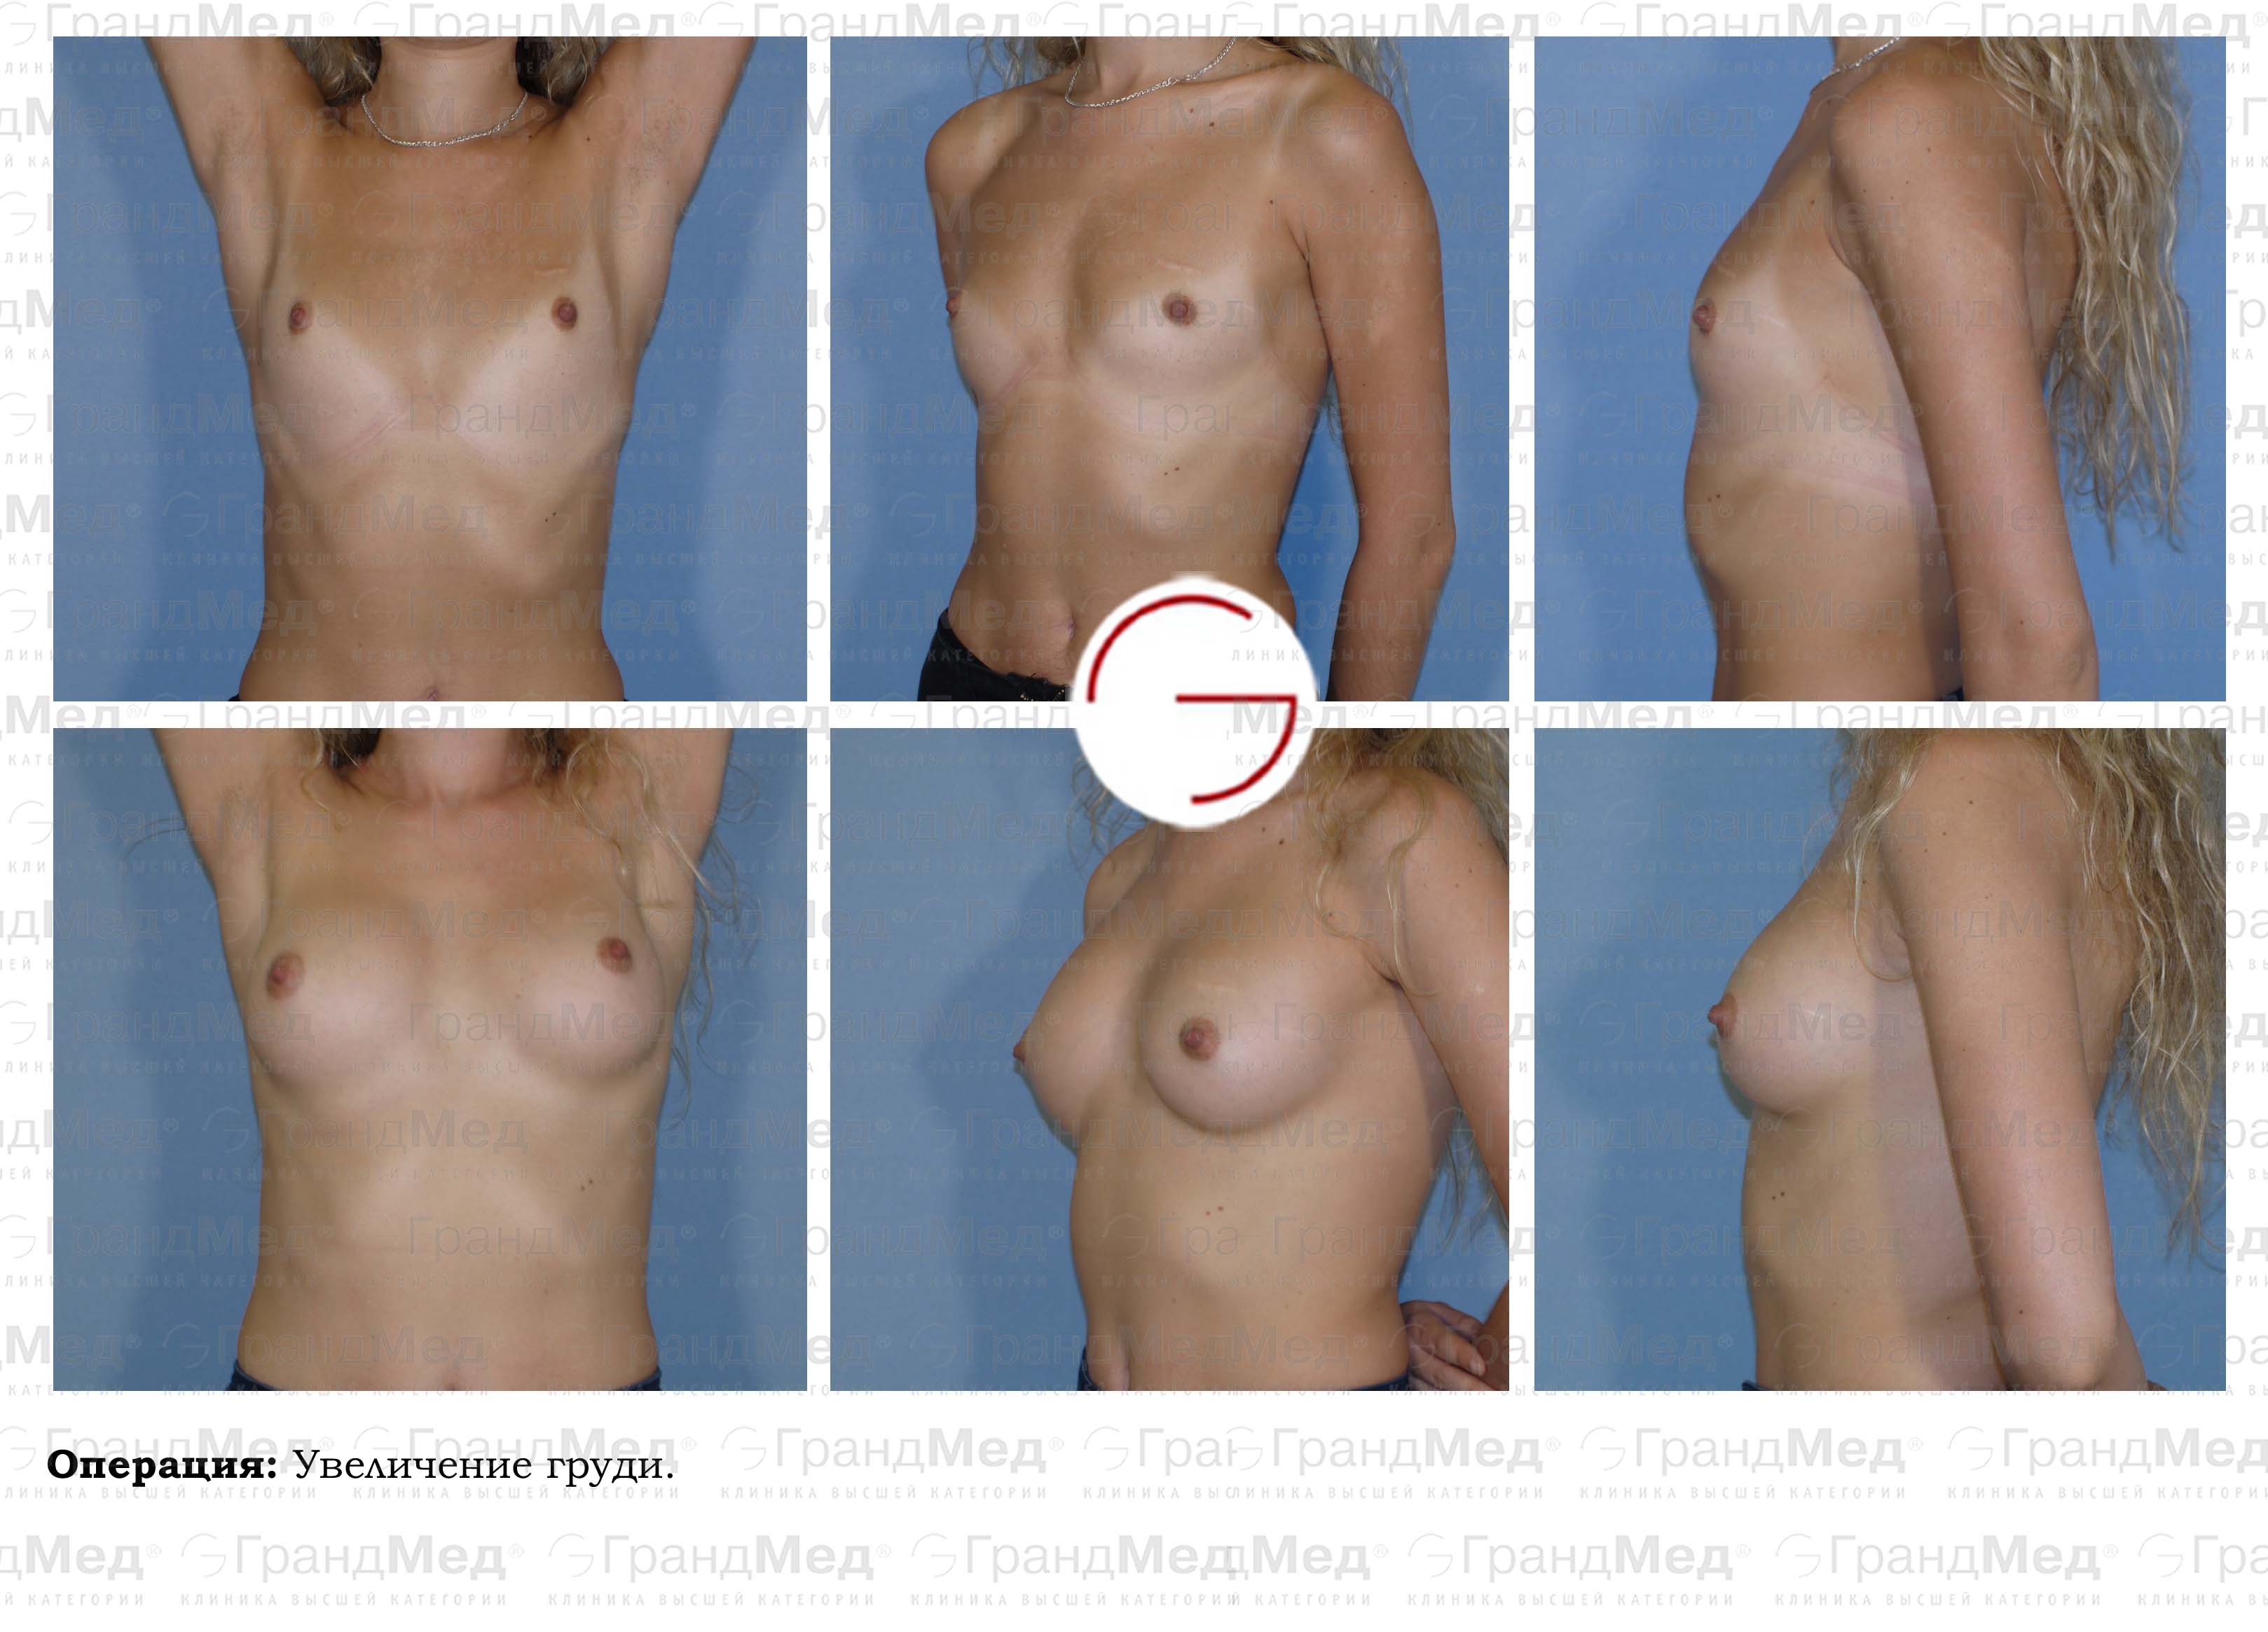 увеличивается грудь у женщин фото 48